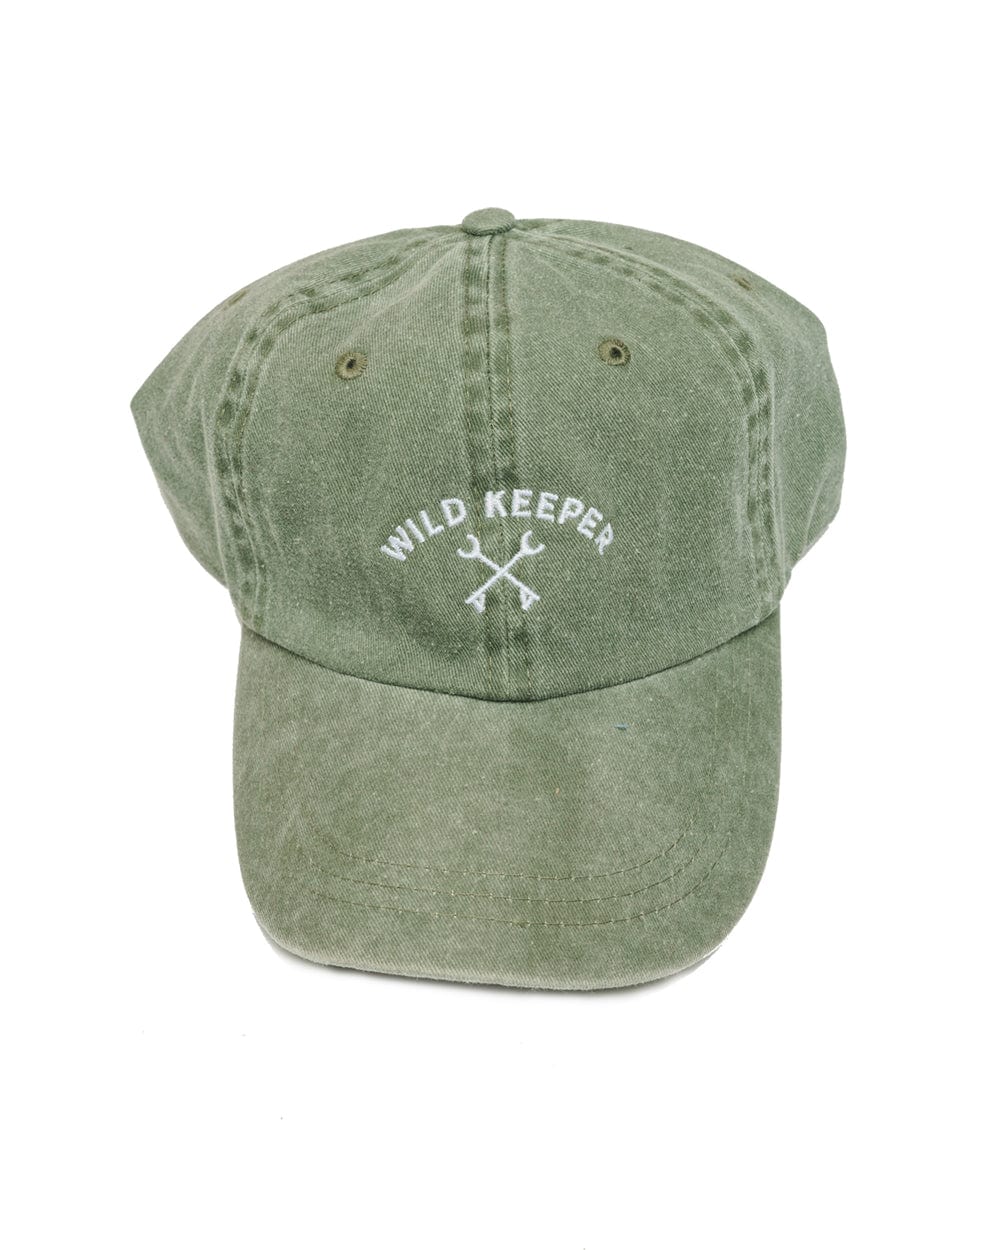 Keep Nature Wild WKA Gear Wild Keeper Dad Hat | Forest